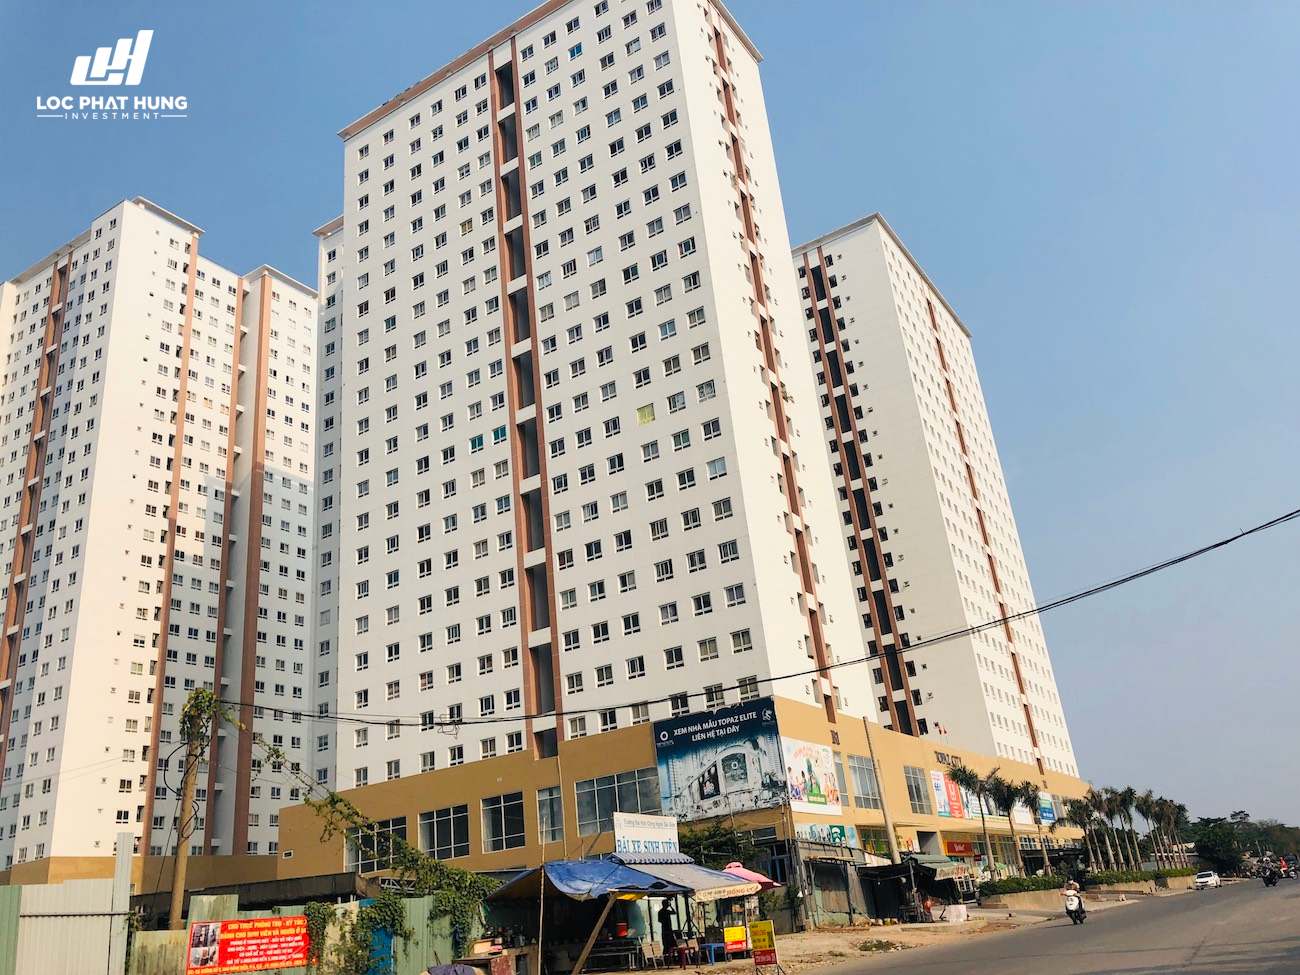 Tiến độ dự án căn hộ chung cư Topaz Elite Quận 8 – Liên hệ SGD BĐS Lộc Phát Hưng 0933.098.890 để nhận mua bán ký gửi, cho thuê căn hộ